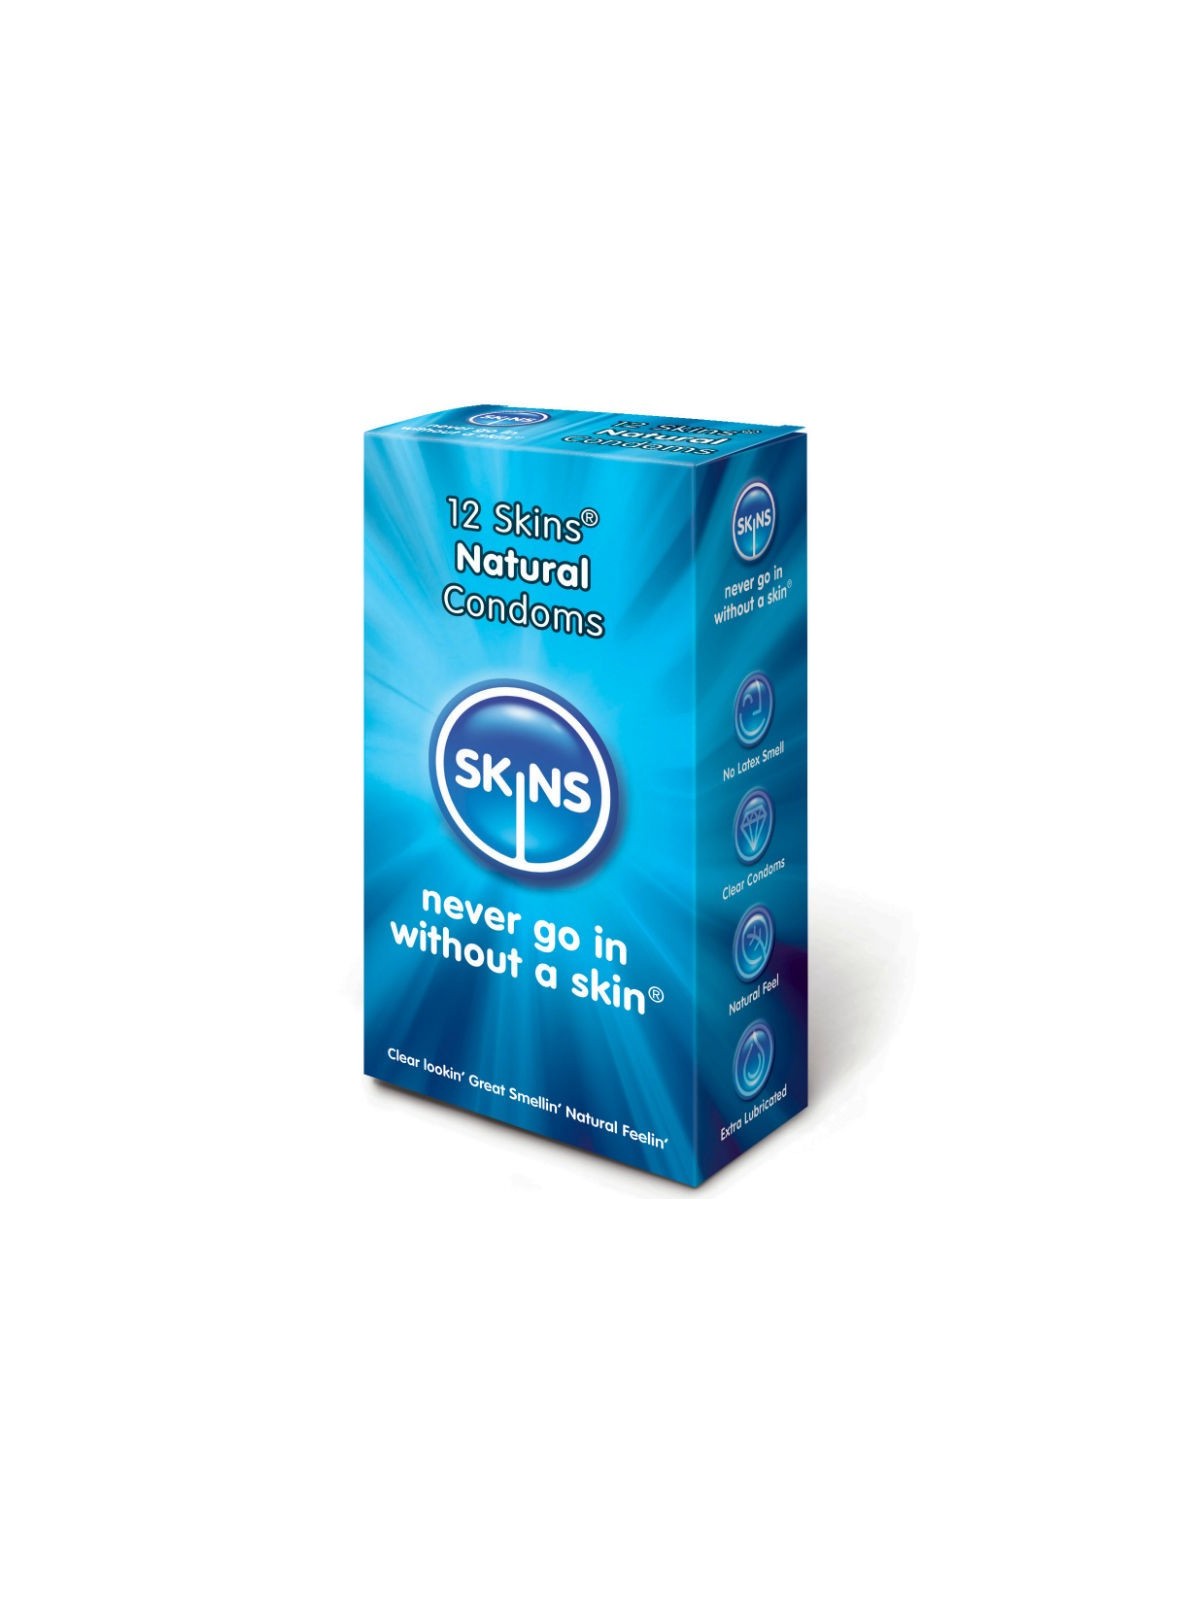 Skins Preservativo Natural - Comprar Condones naturales Skins - Preservativos naturales (1)